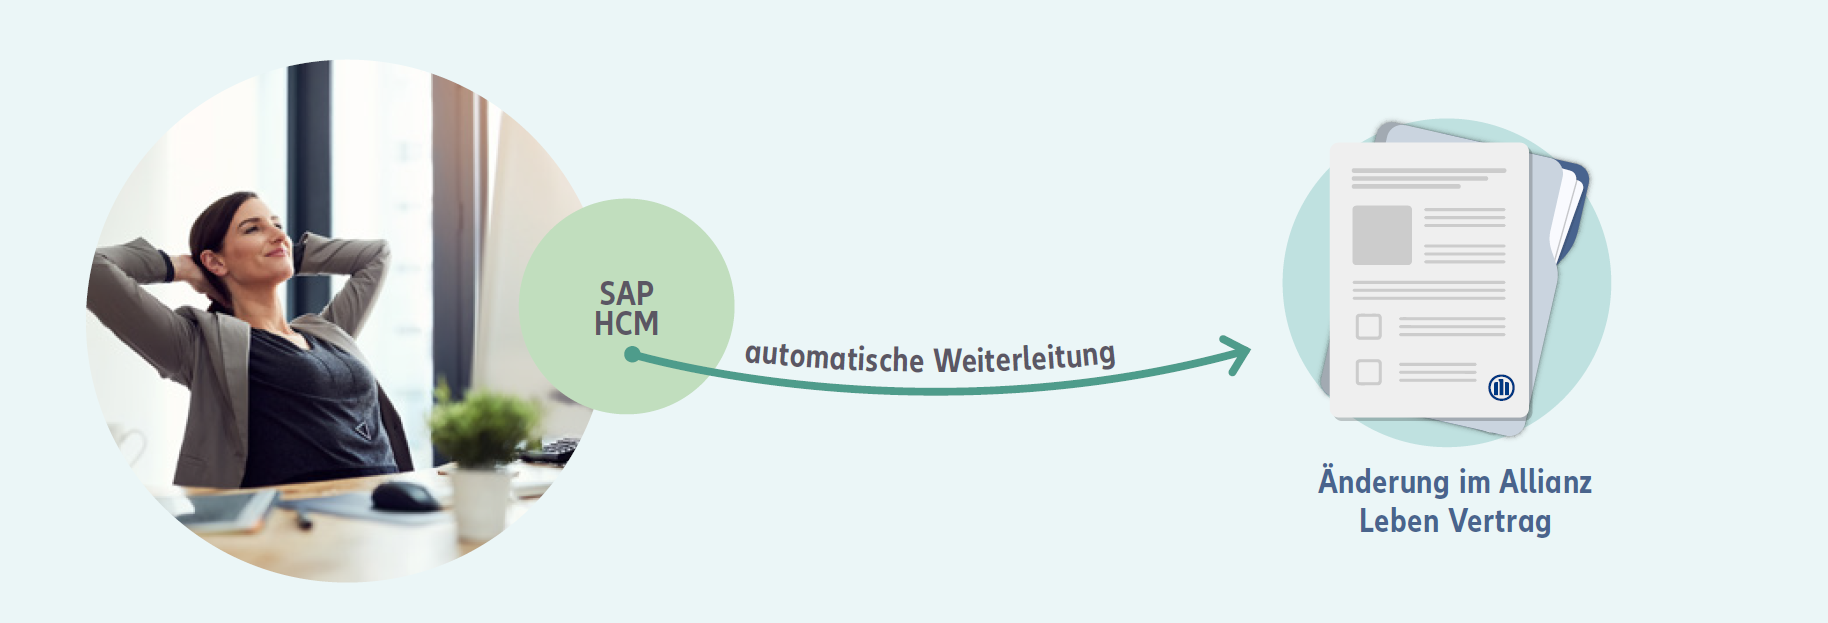 Infografik bAV-Connector: Daten werden automatisch aus SAP HCM an die Allianz übermittelt